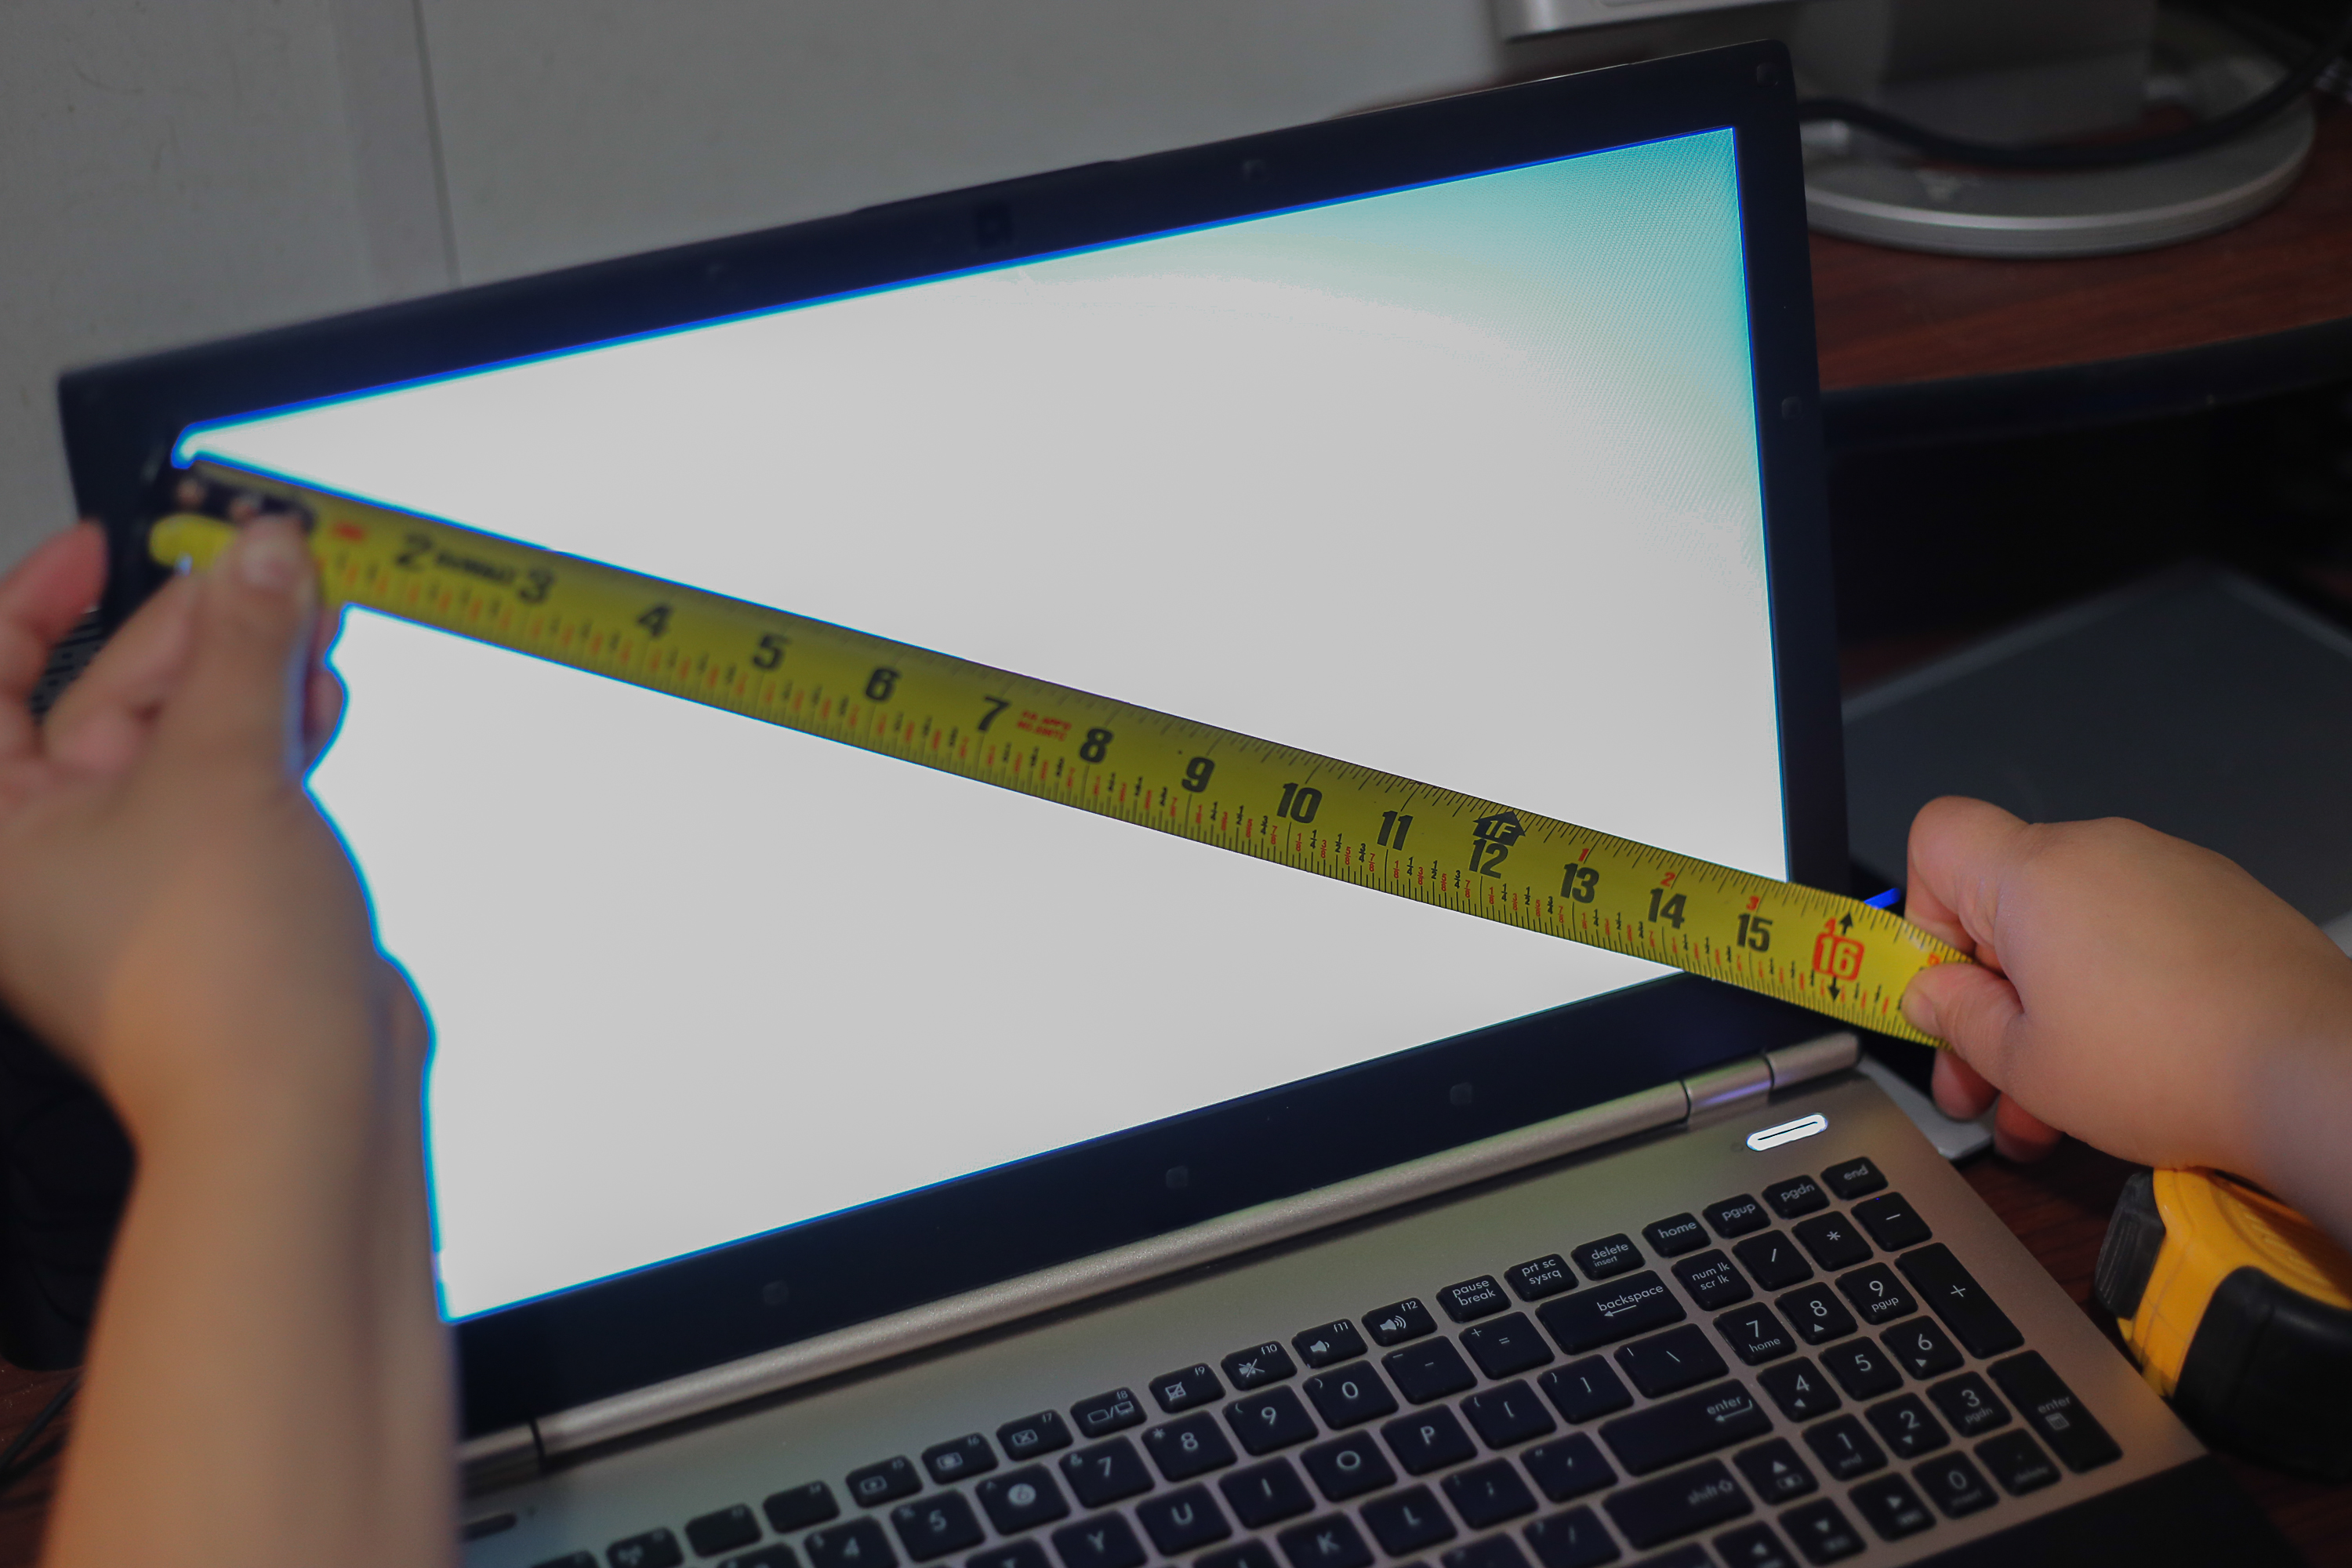 13 5 21 5 см. Экран ноутбука 15.6 дюймов в сантиметрах. Экран ноутбука 14 дюймов в сантиметрах. Ноутбук асус 15.6 дюймов размер в см. Диагональ 11.6 дюймов в сантиметрах ноутбук.